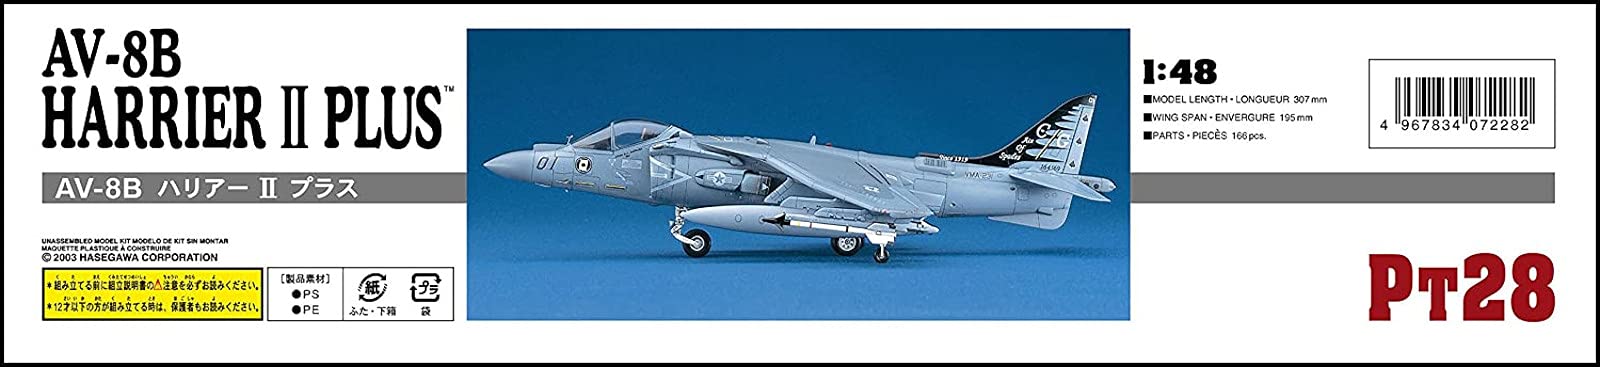 HASEGAWA 1/48 Av-8B Harrier II Plus USMC Angreifer Plastikmodell